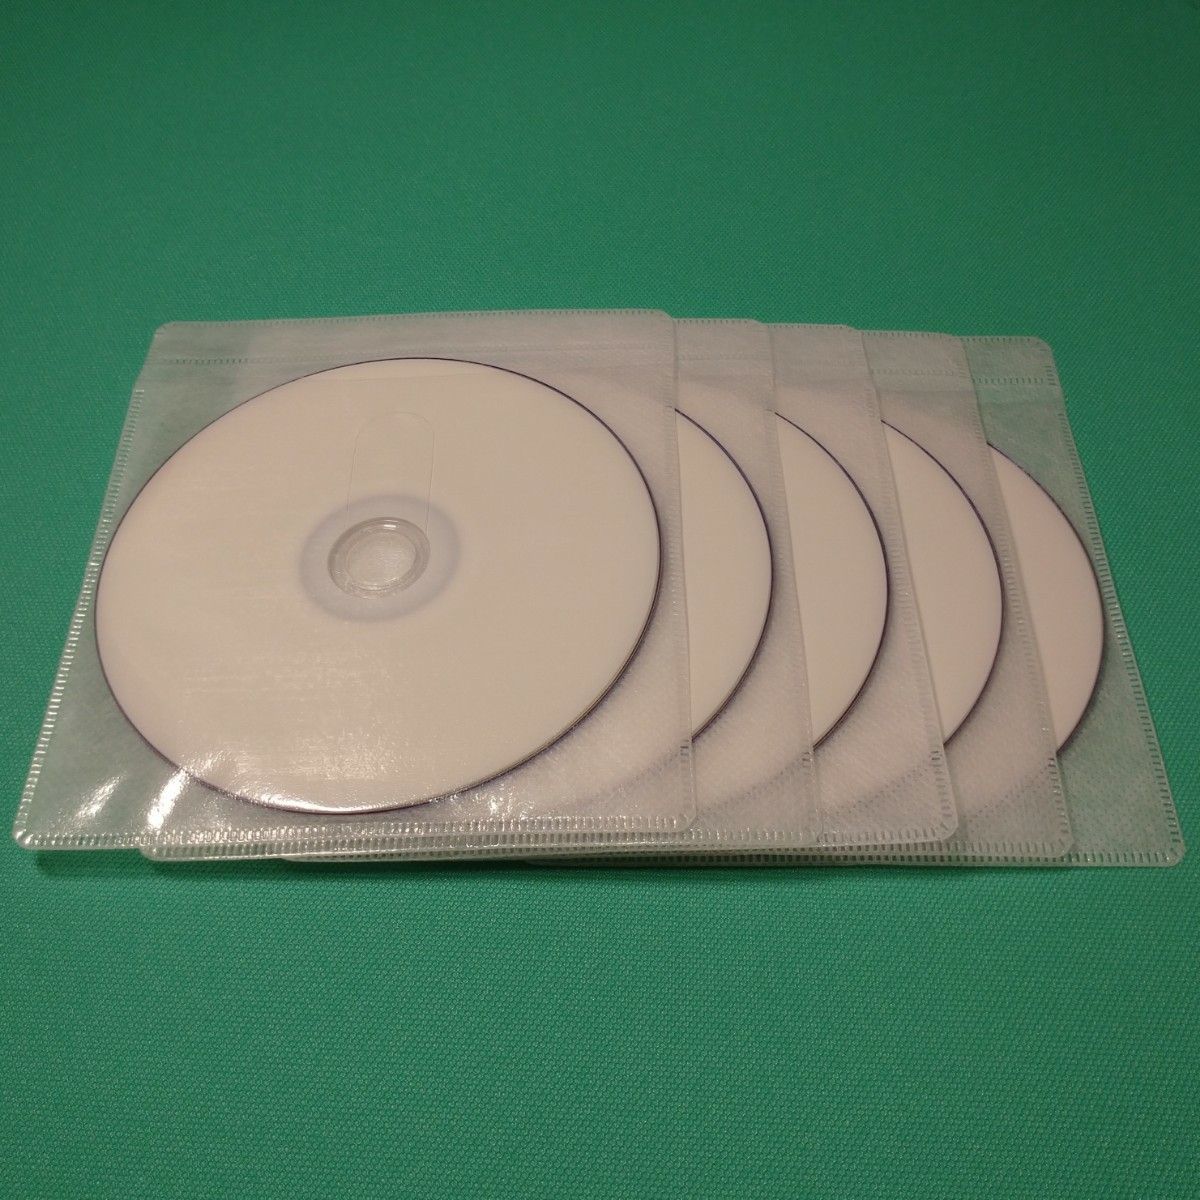 〈10枚〉OfficeSave 1回記録用 DVD+R DL 8.5GB ホワイトプリンタブル 片面2層 2.4-8倍速 データ用